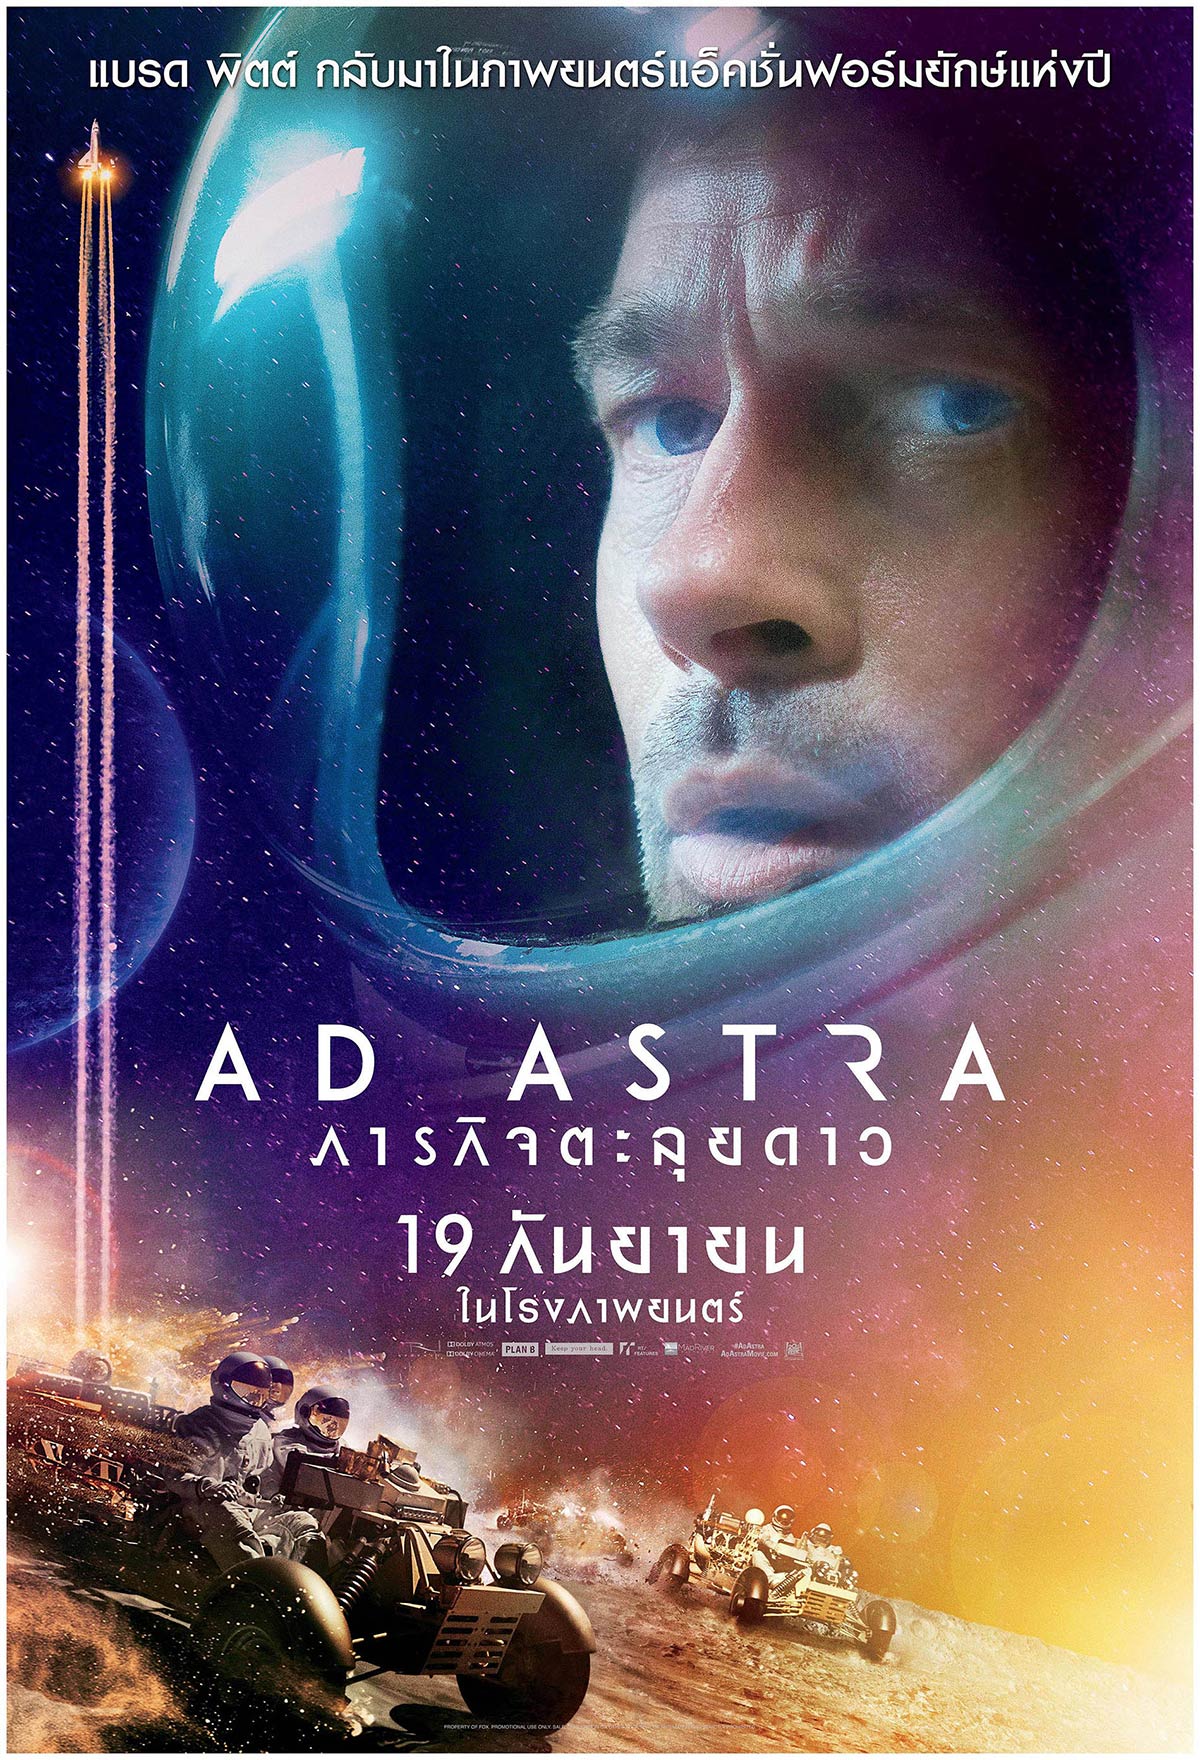 ดูหนังออนไลน์ฟรี AD ASTRA (2019) ภารกิจตะลุยดาว